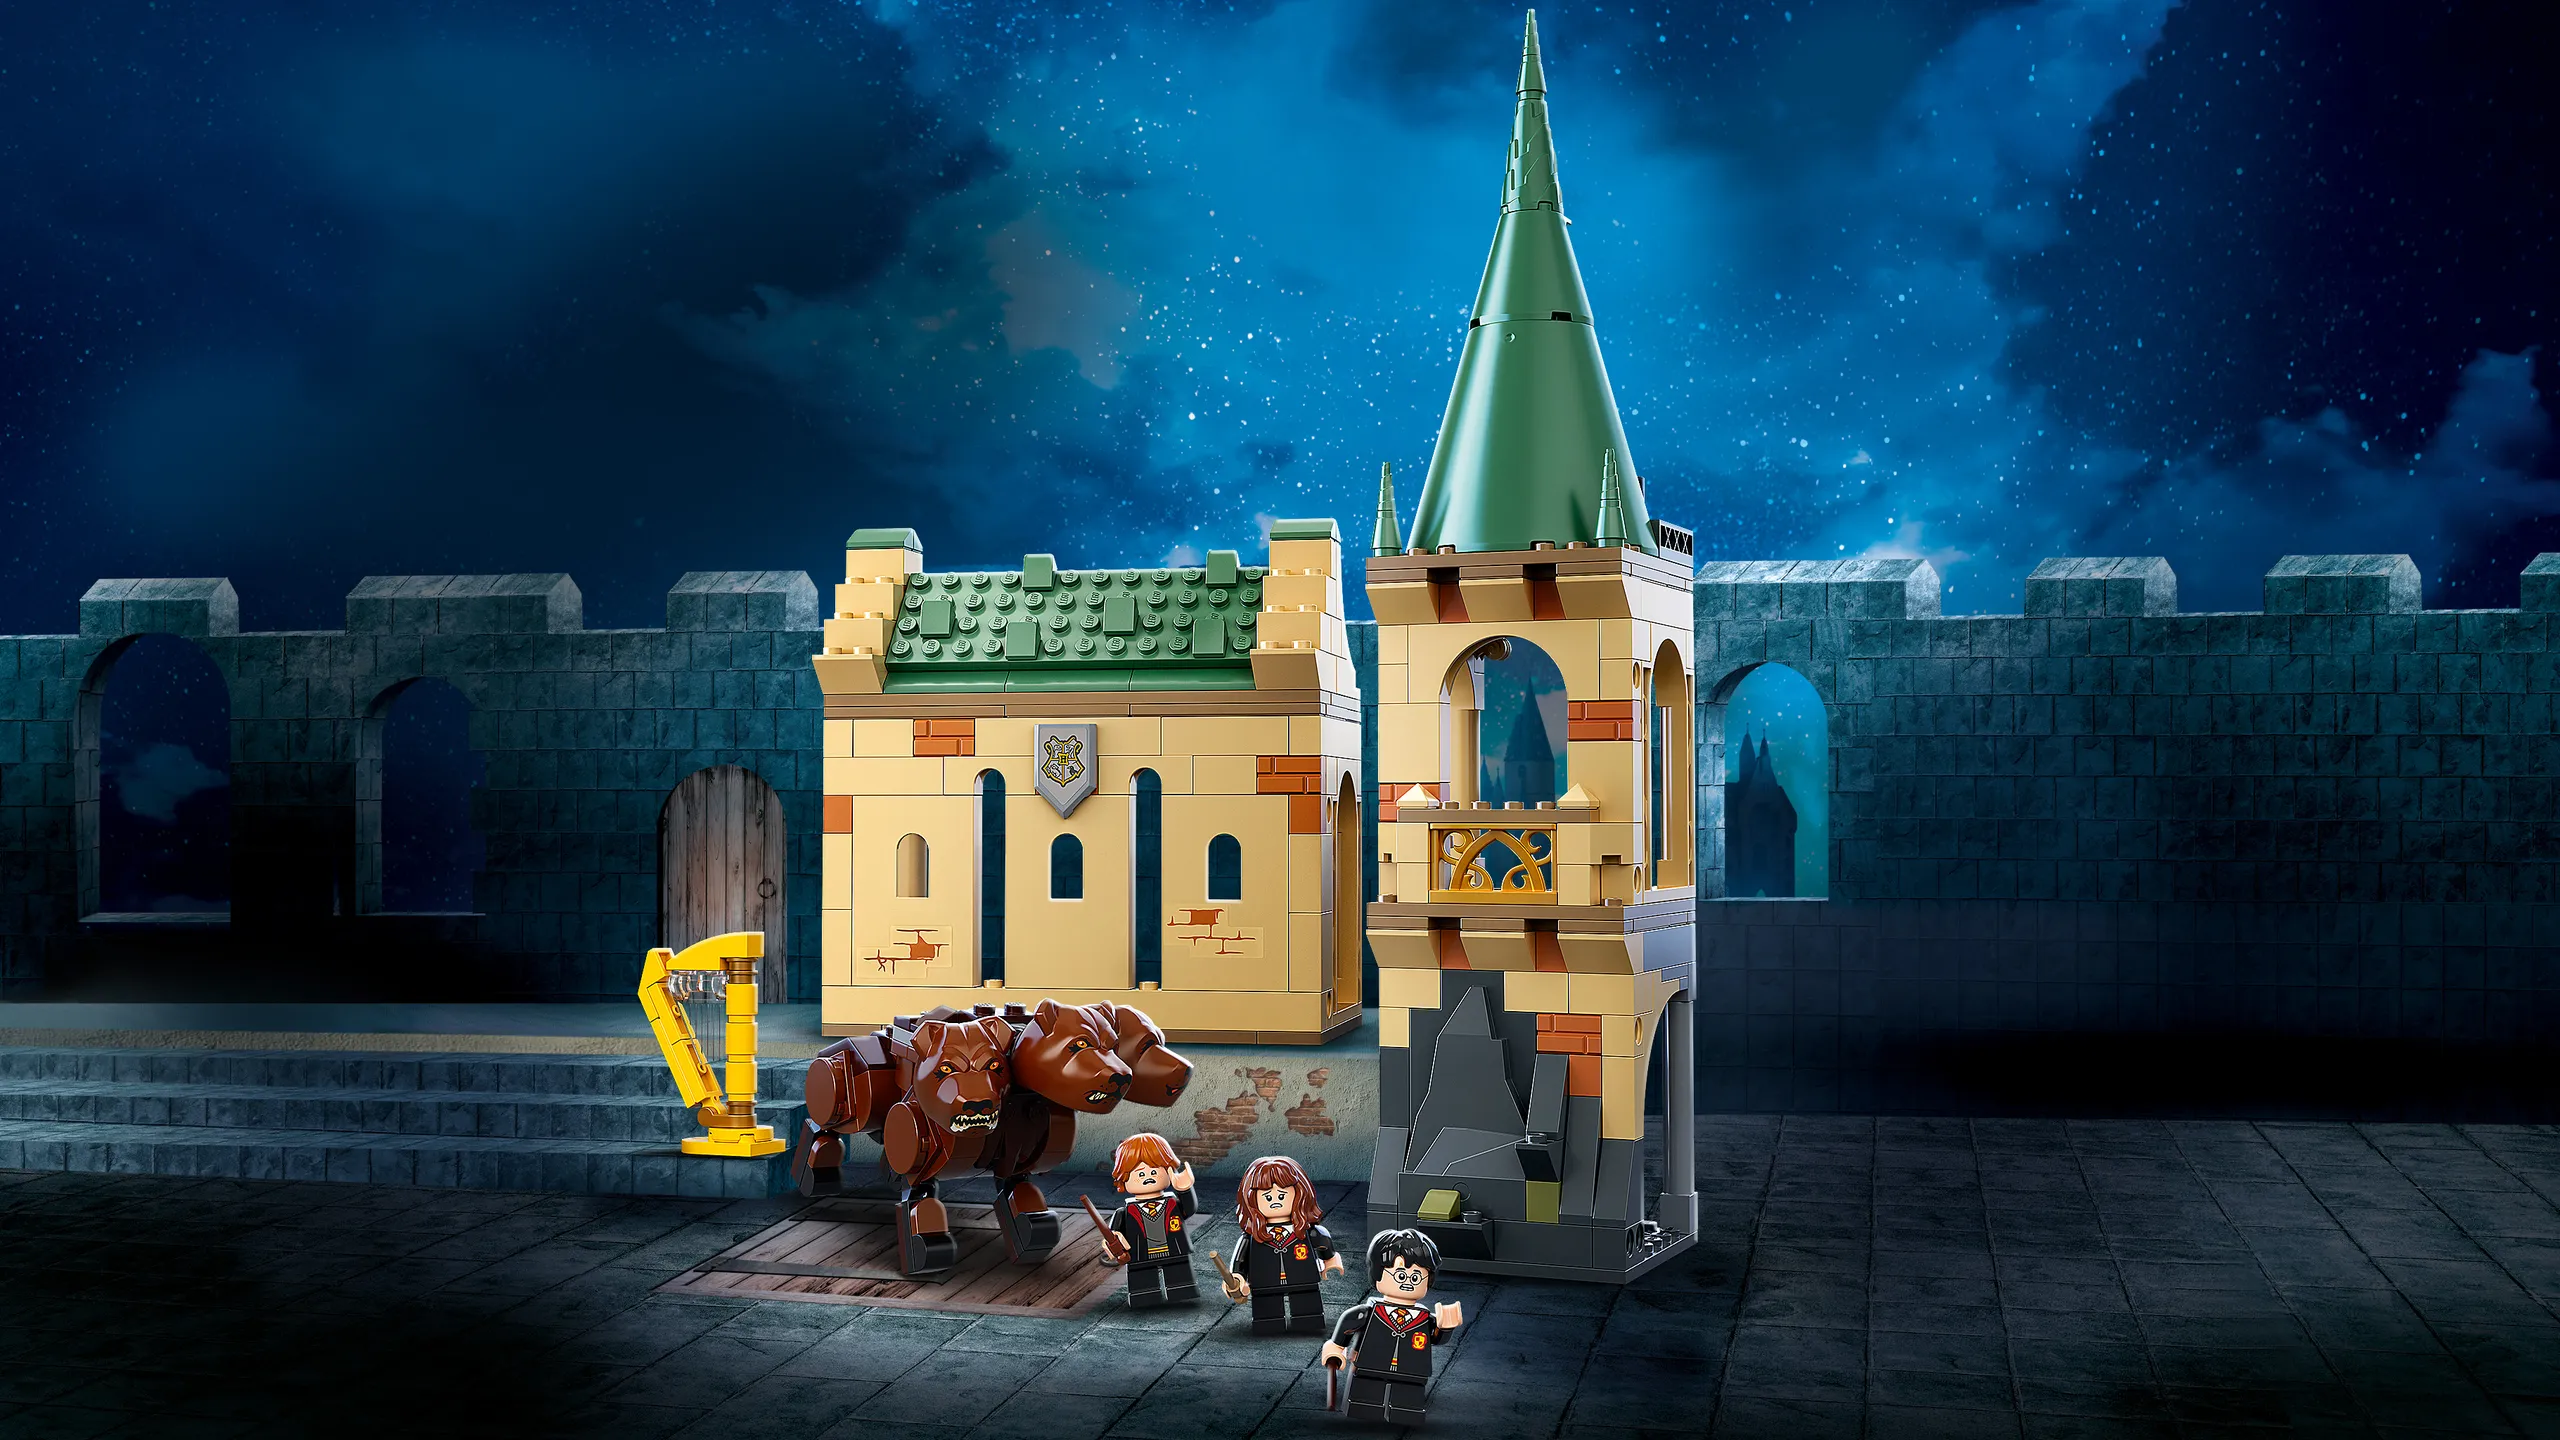 LEGO- Harry Potter La Sfida dell'Ungaro Spinato al Torneo Tremaghi, 75946